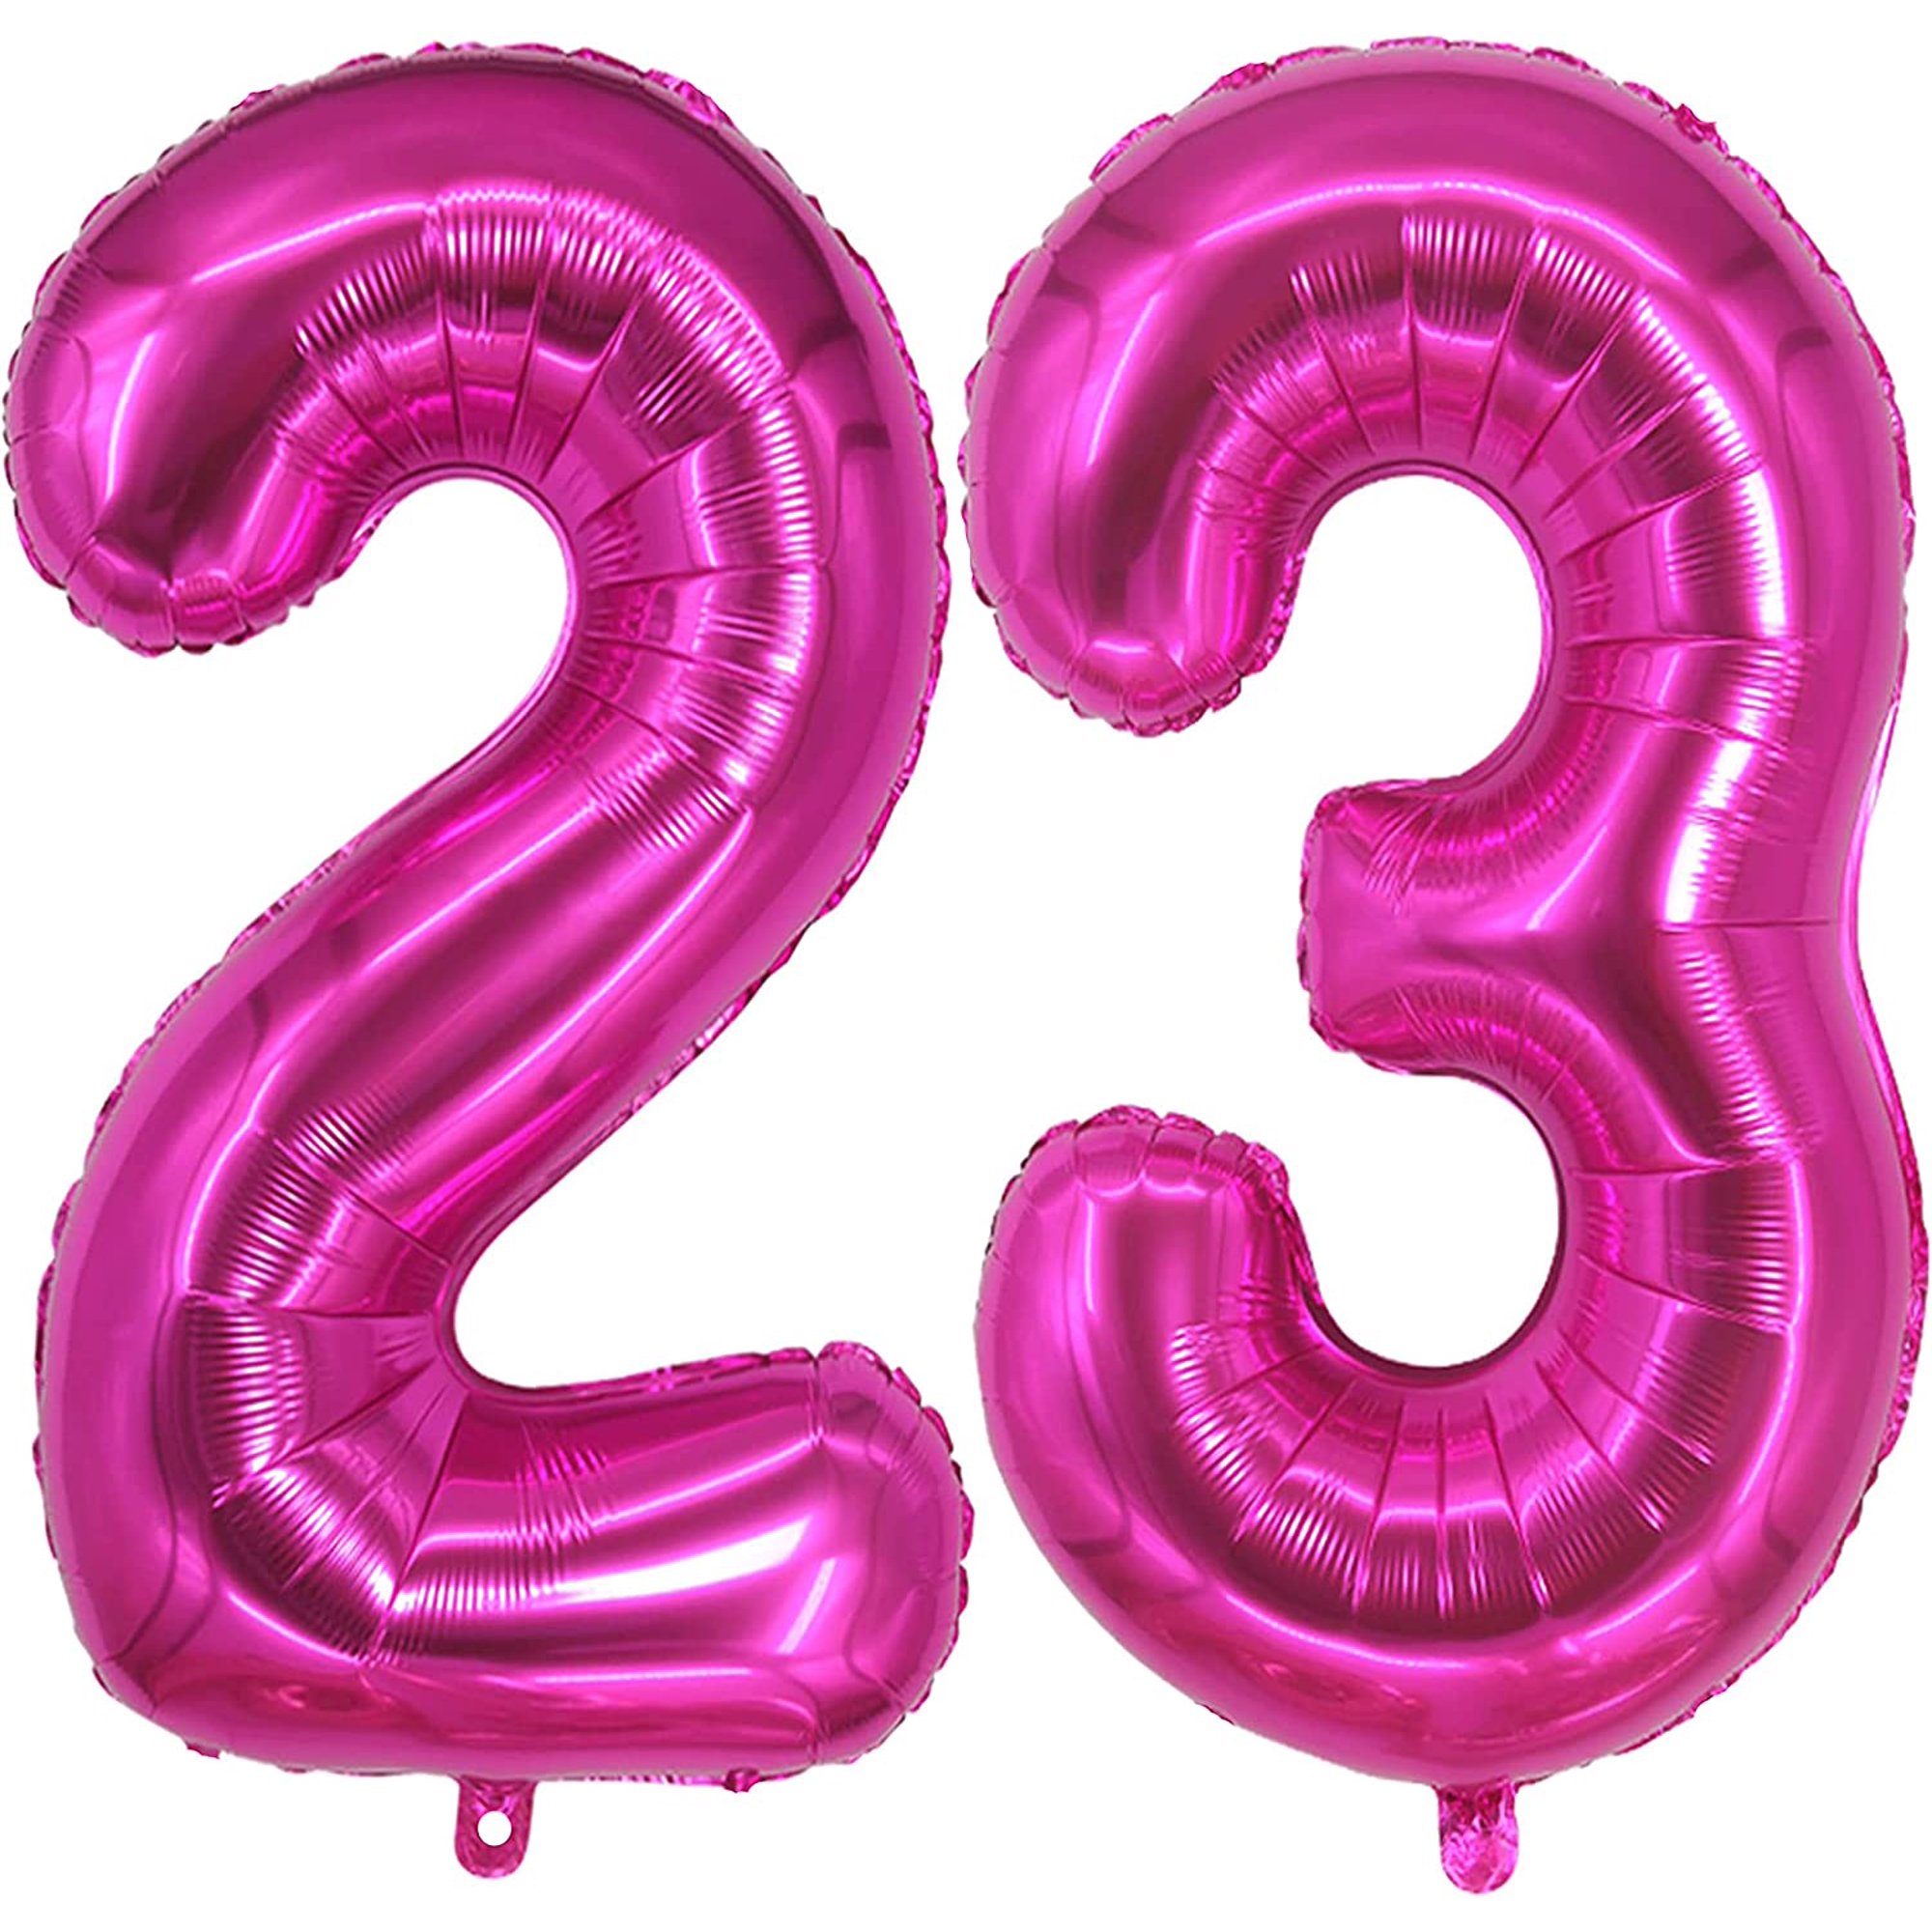 Globos gigantes (40 pulgadas) del número 32 en color oro rosa, para  decoraciones de cumpleaños para mujer